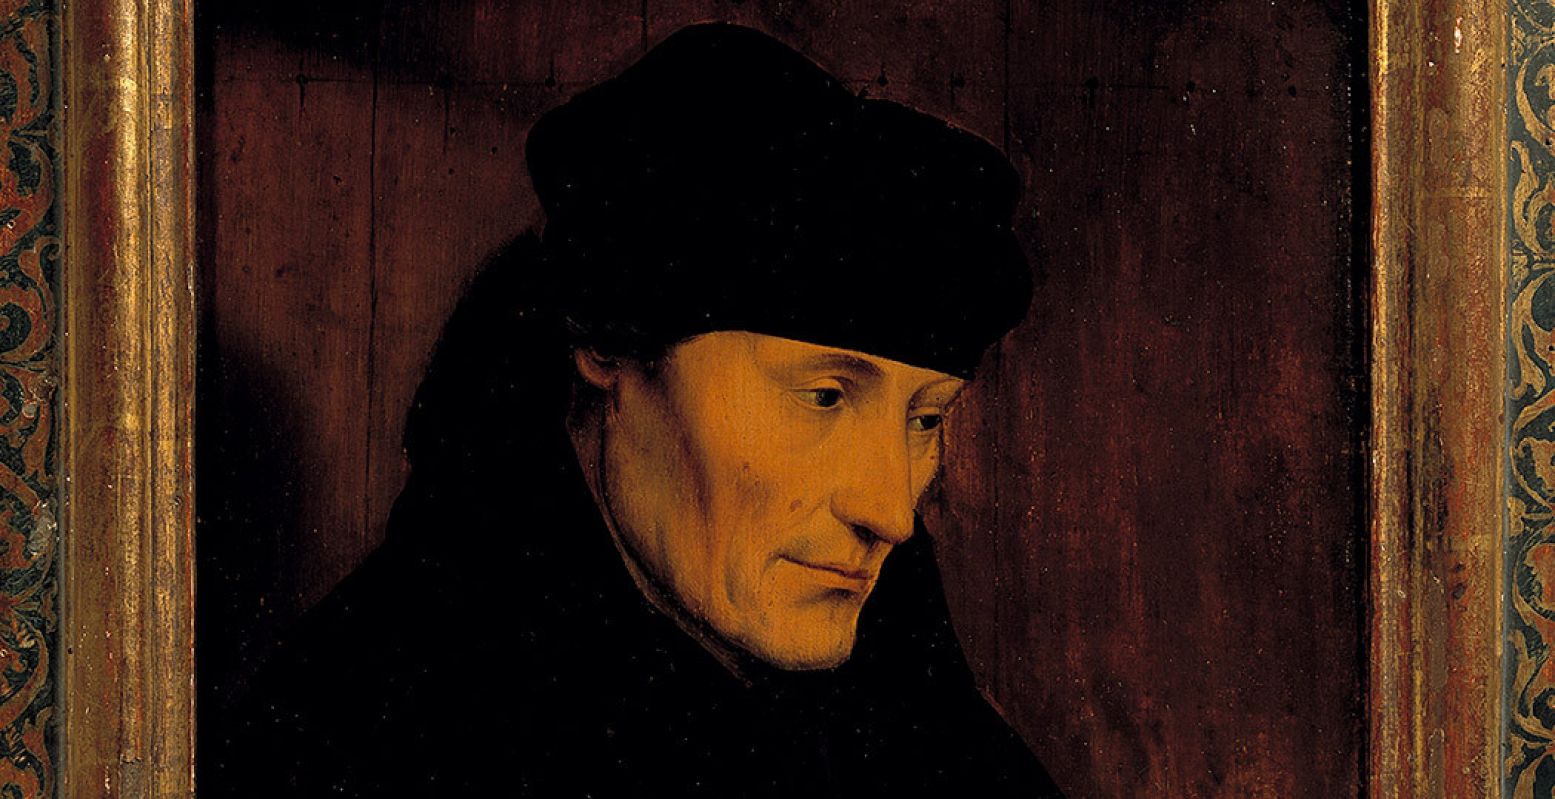 Kopie naar Quinten (I) Massijs, deel van het portret van Desiderius Erasmus, 1550-1599. Erasmus was één van de leerlingen van Adrianus. Foto: Museum Catharijneconvent